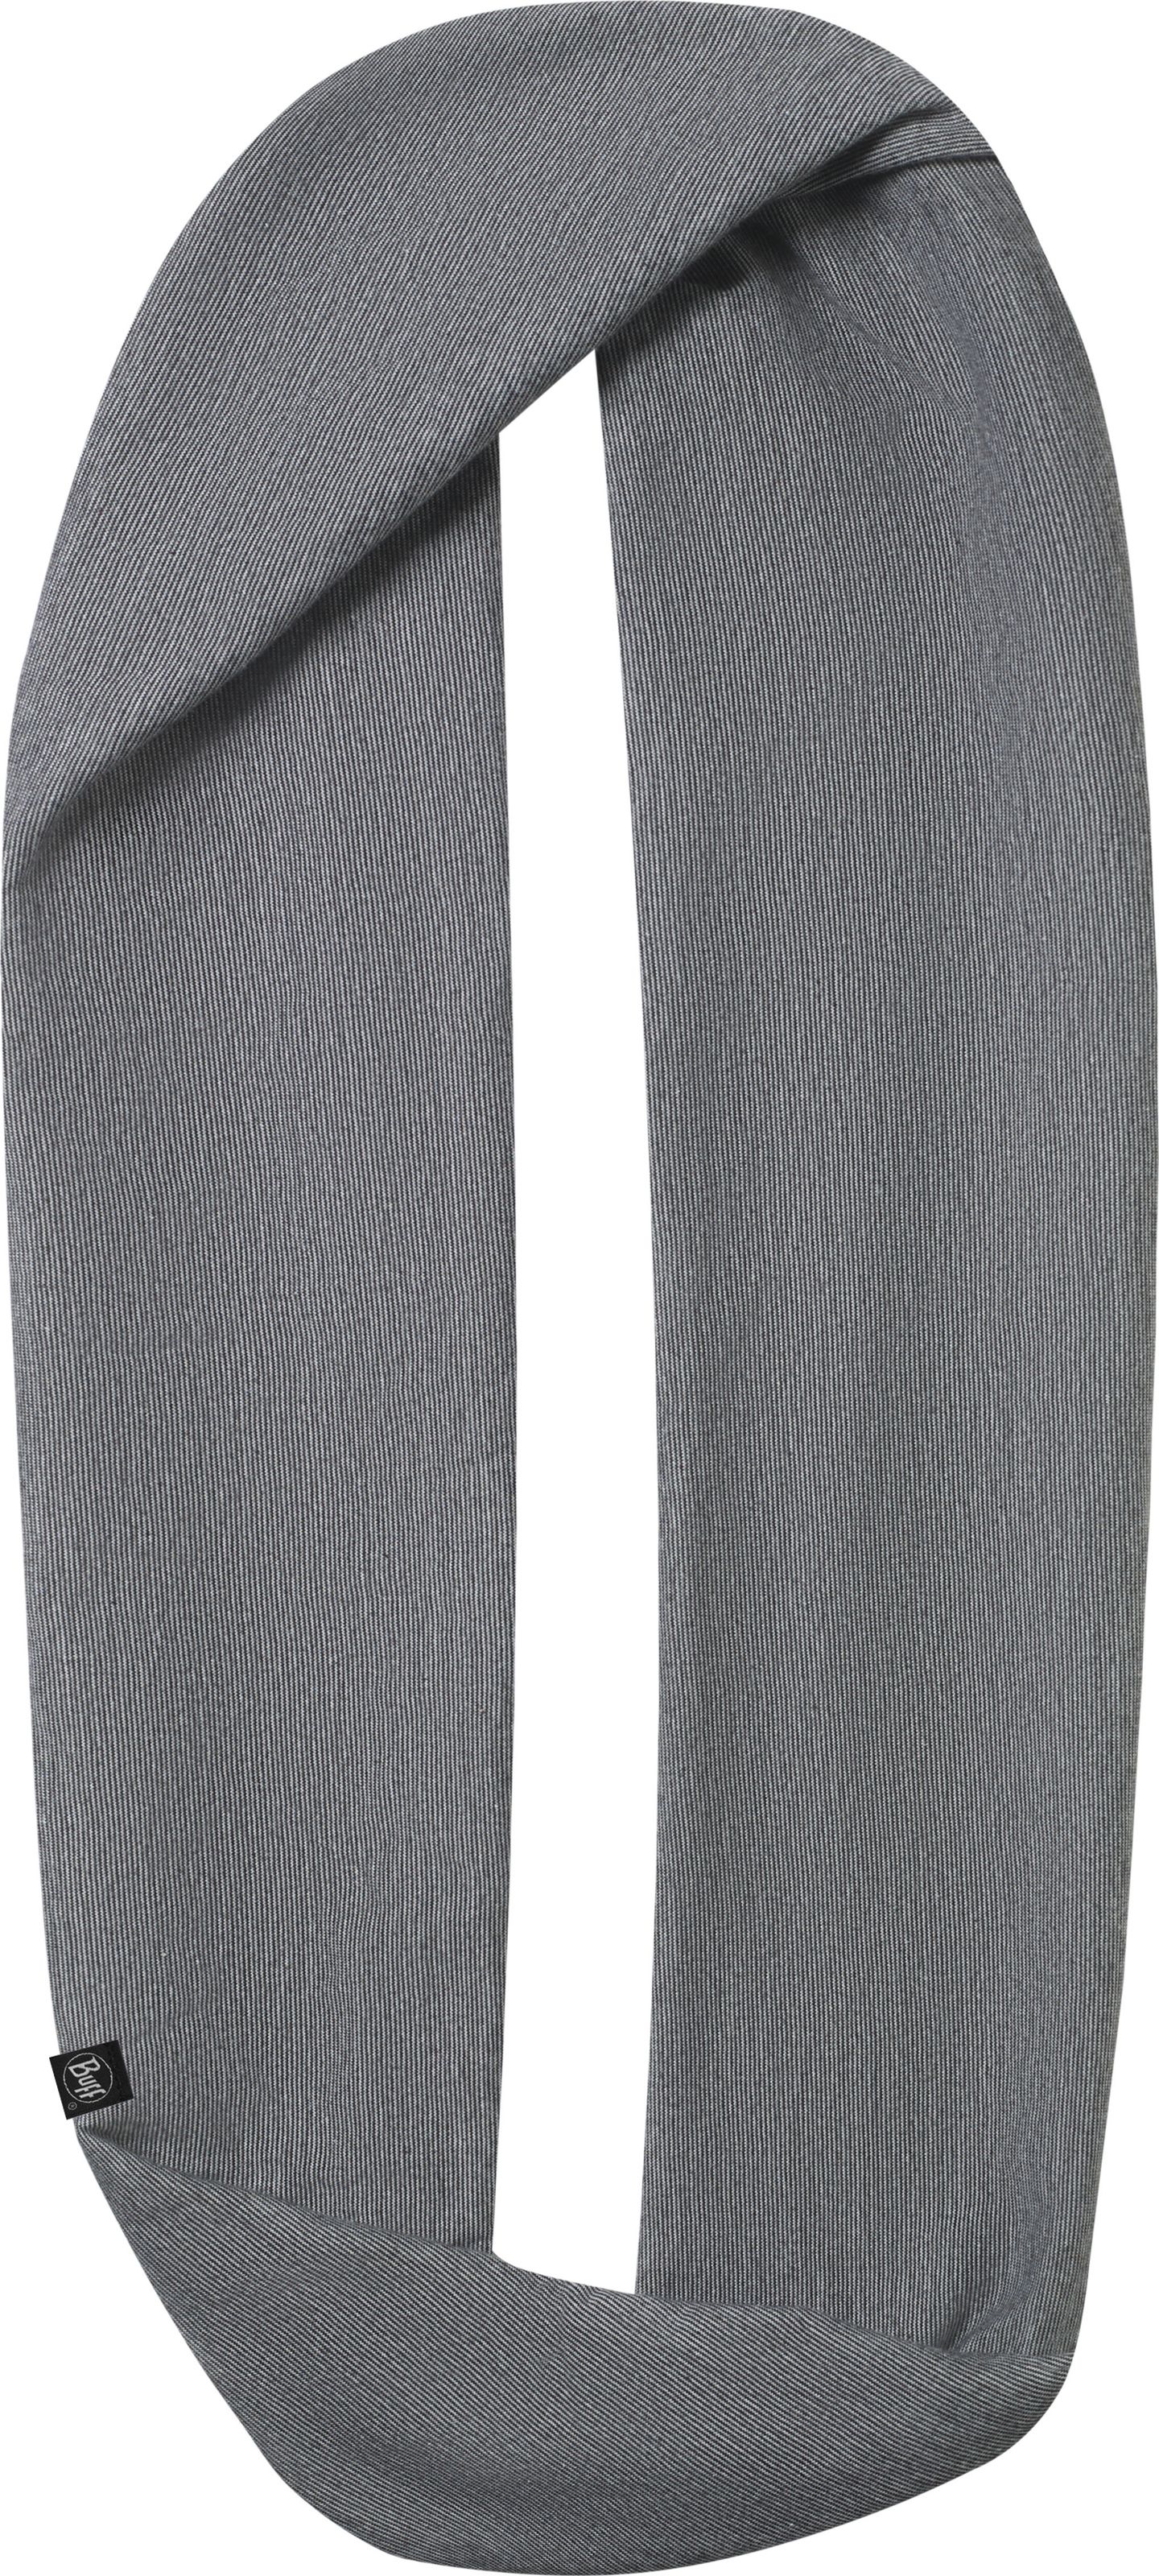 Шарф Buff Cotton Infinity Grey Stripes, цвет: серый. 115015.937.10.00. Размер универсальный